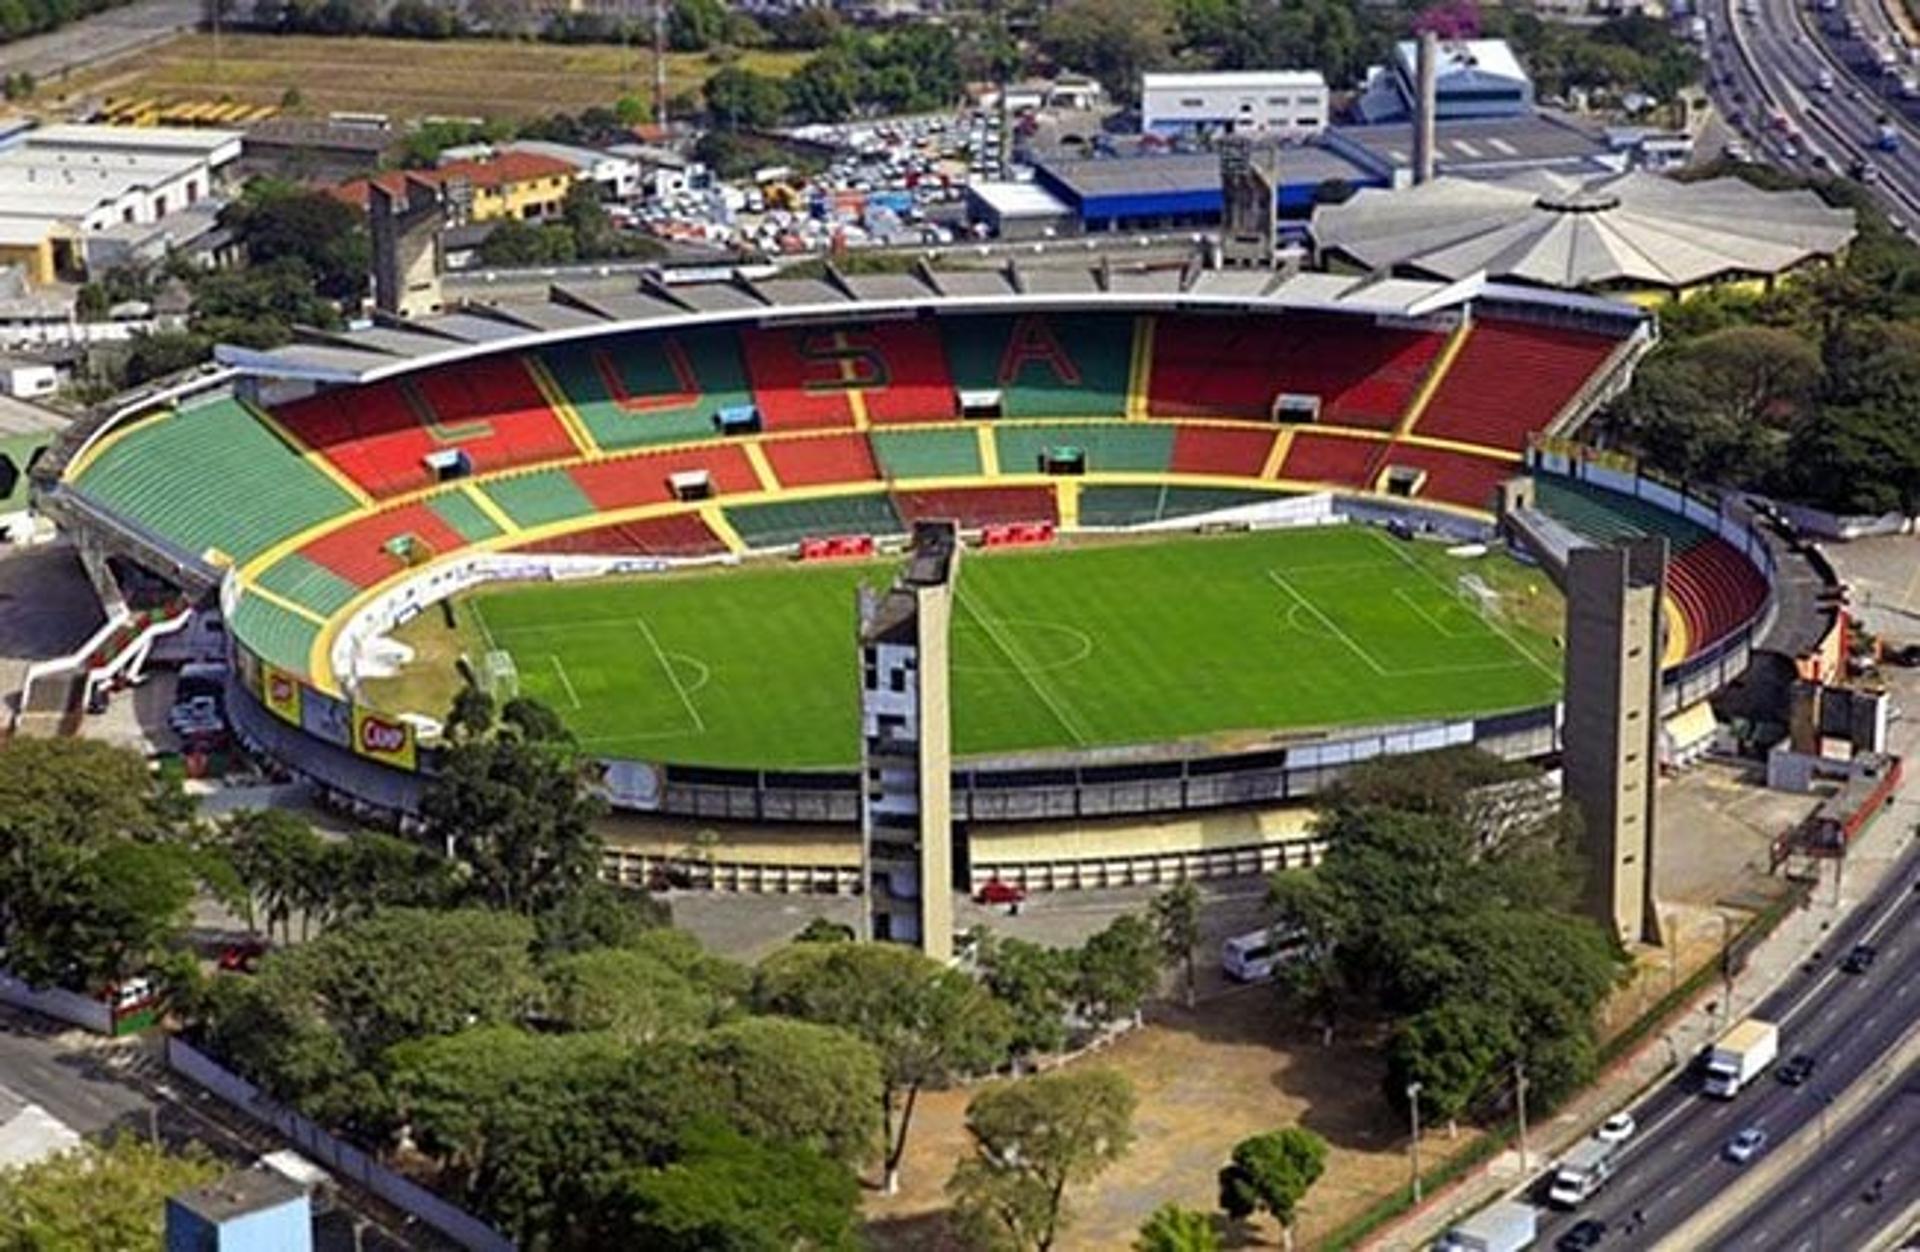 Canindé, estádio da Portuguesa